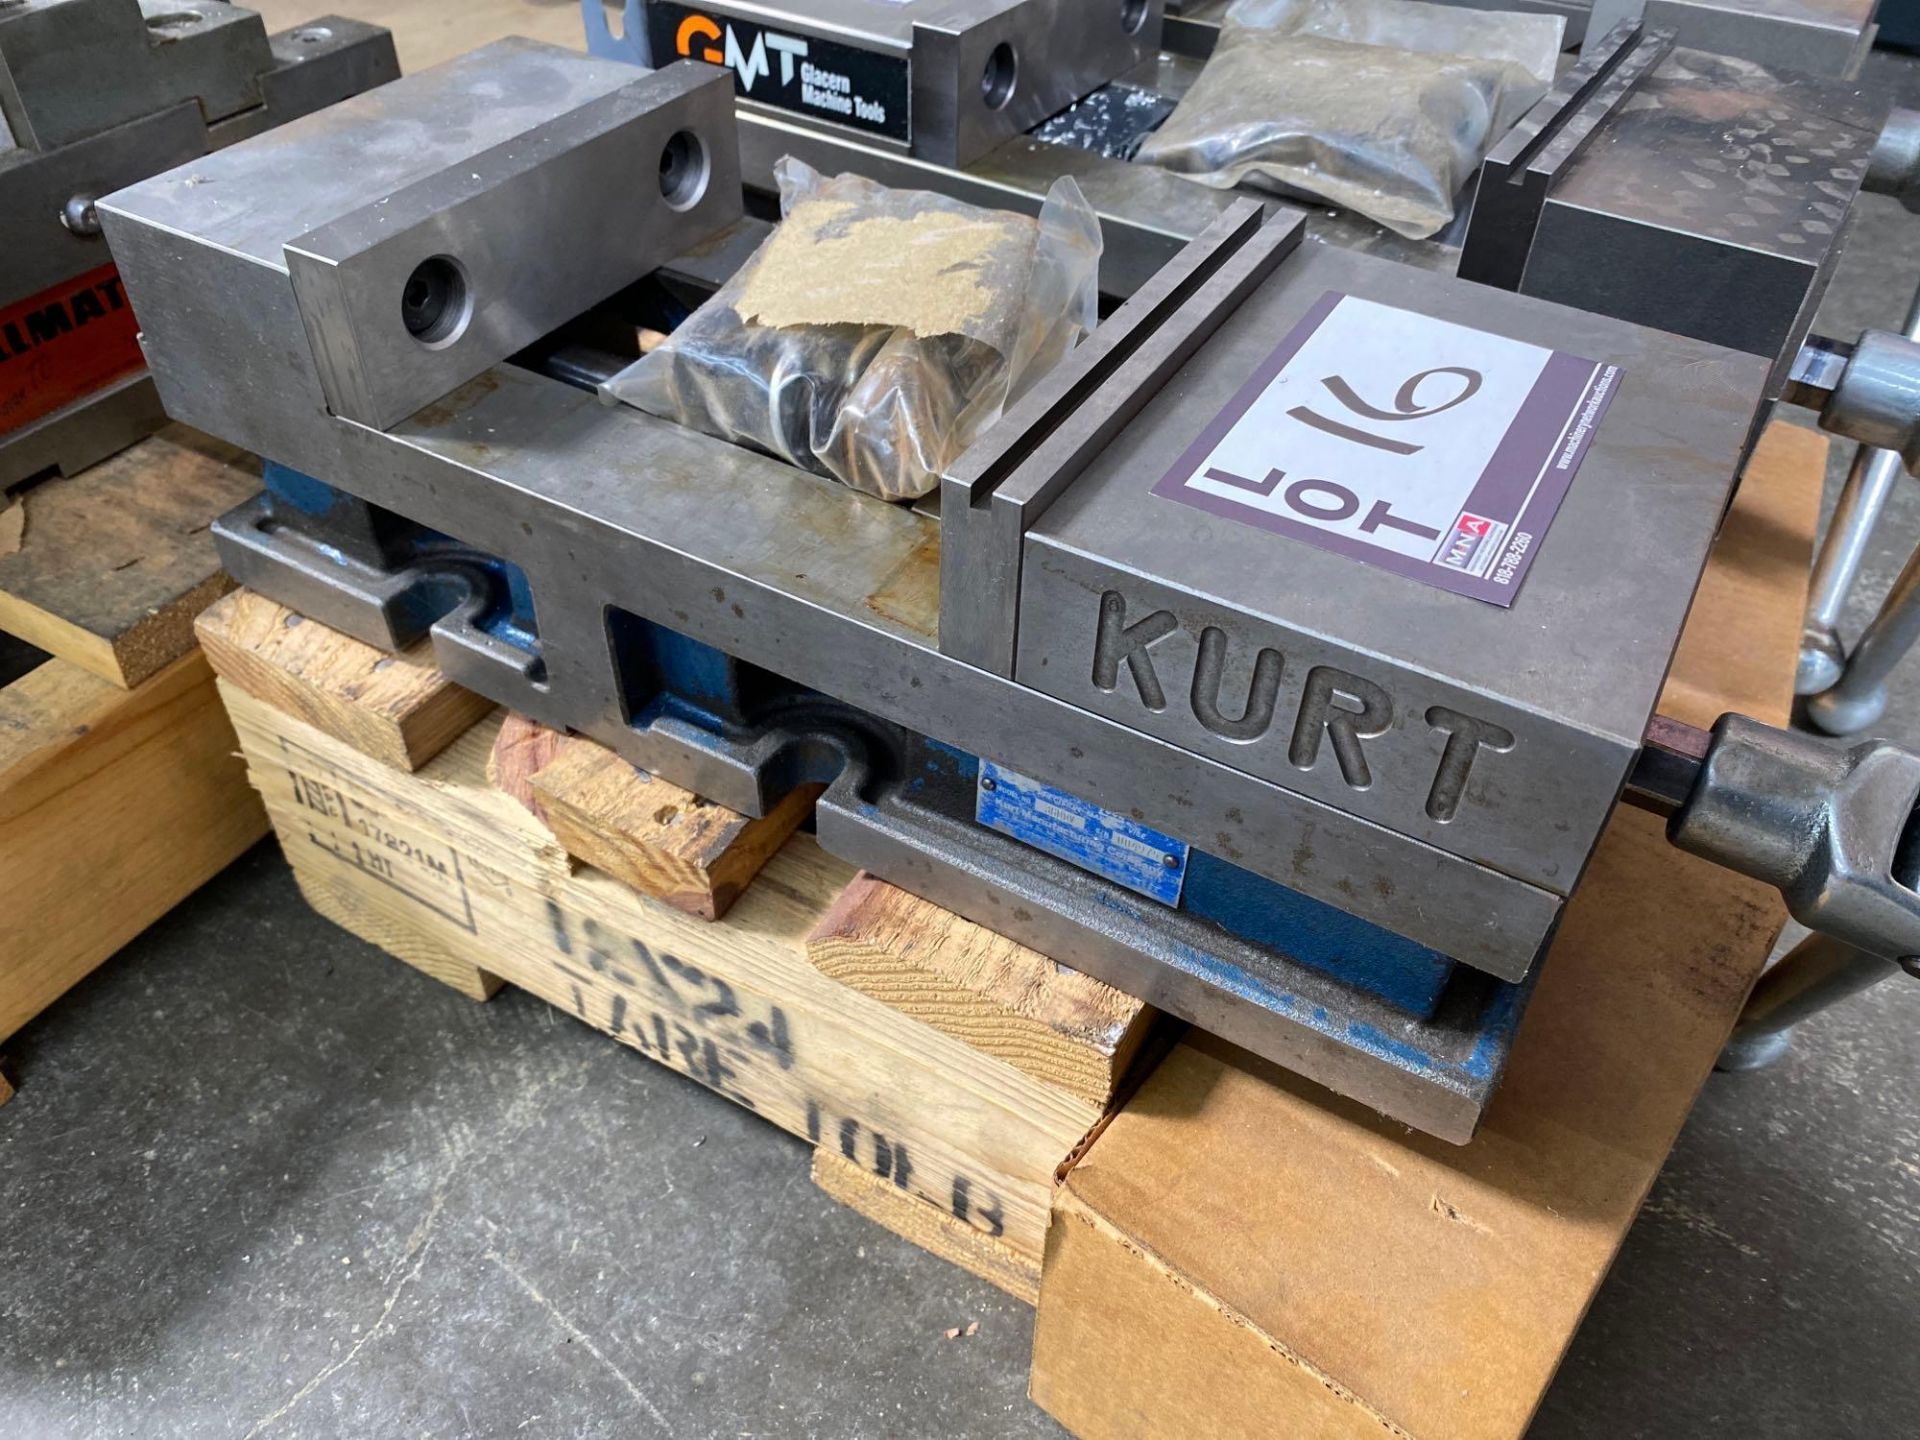 Kurt 6” Machine Vise - Image 2 of 2